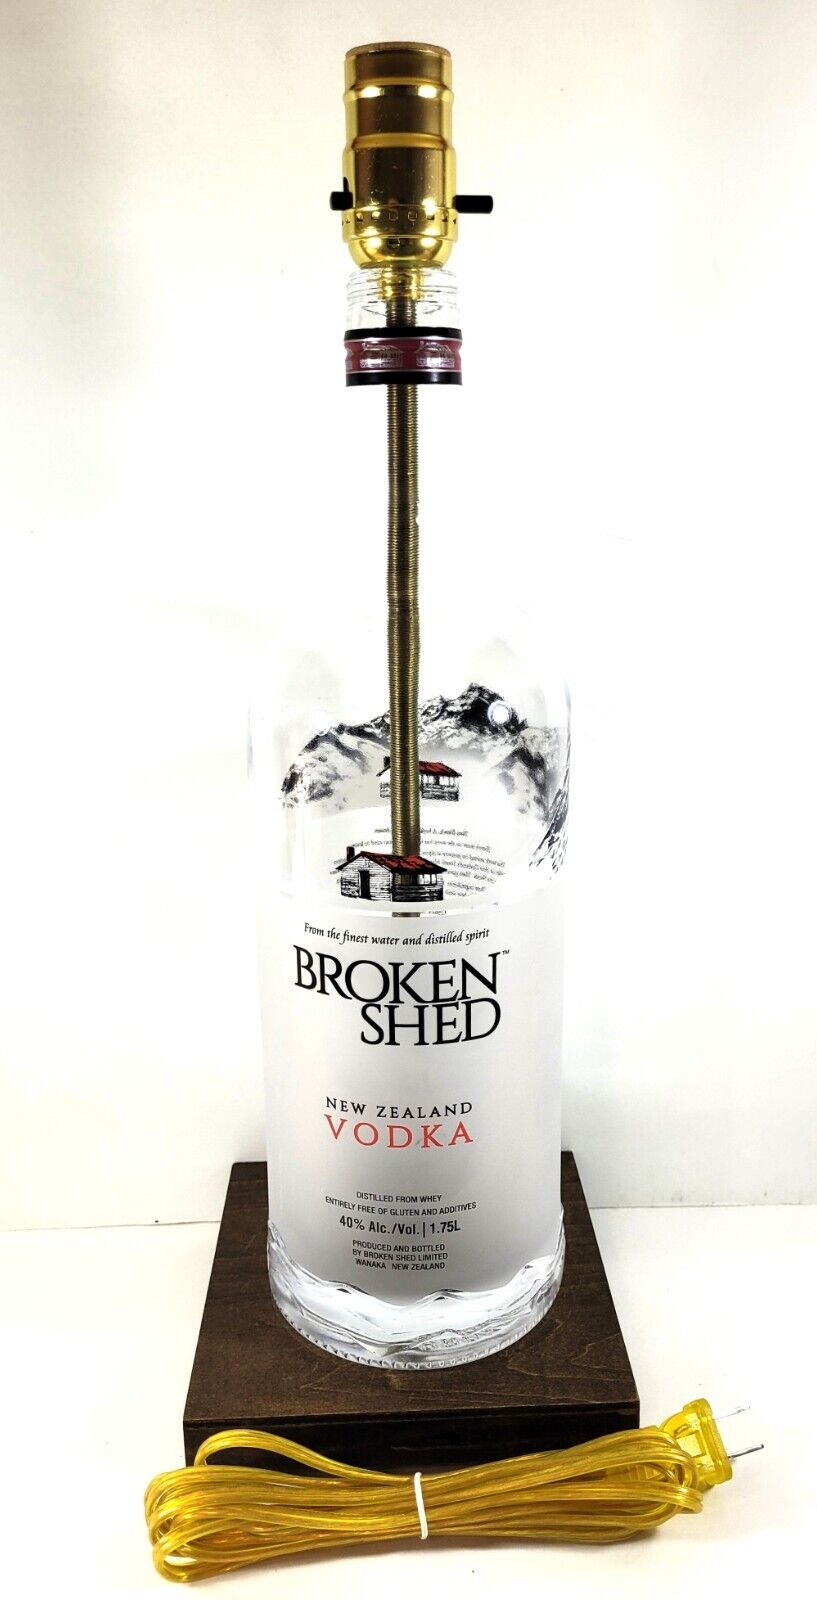 Broken Shed Vodka Large 1.75L Liquor Bottle Bar TABLE LAMP Light with Wood Base